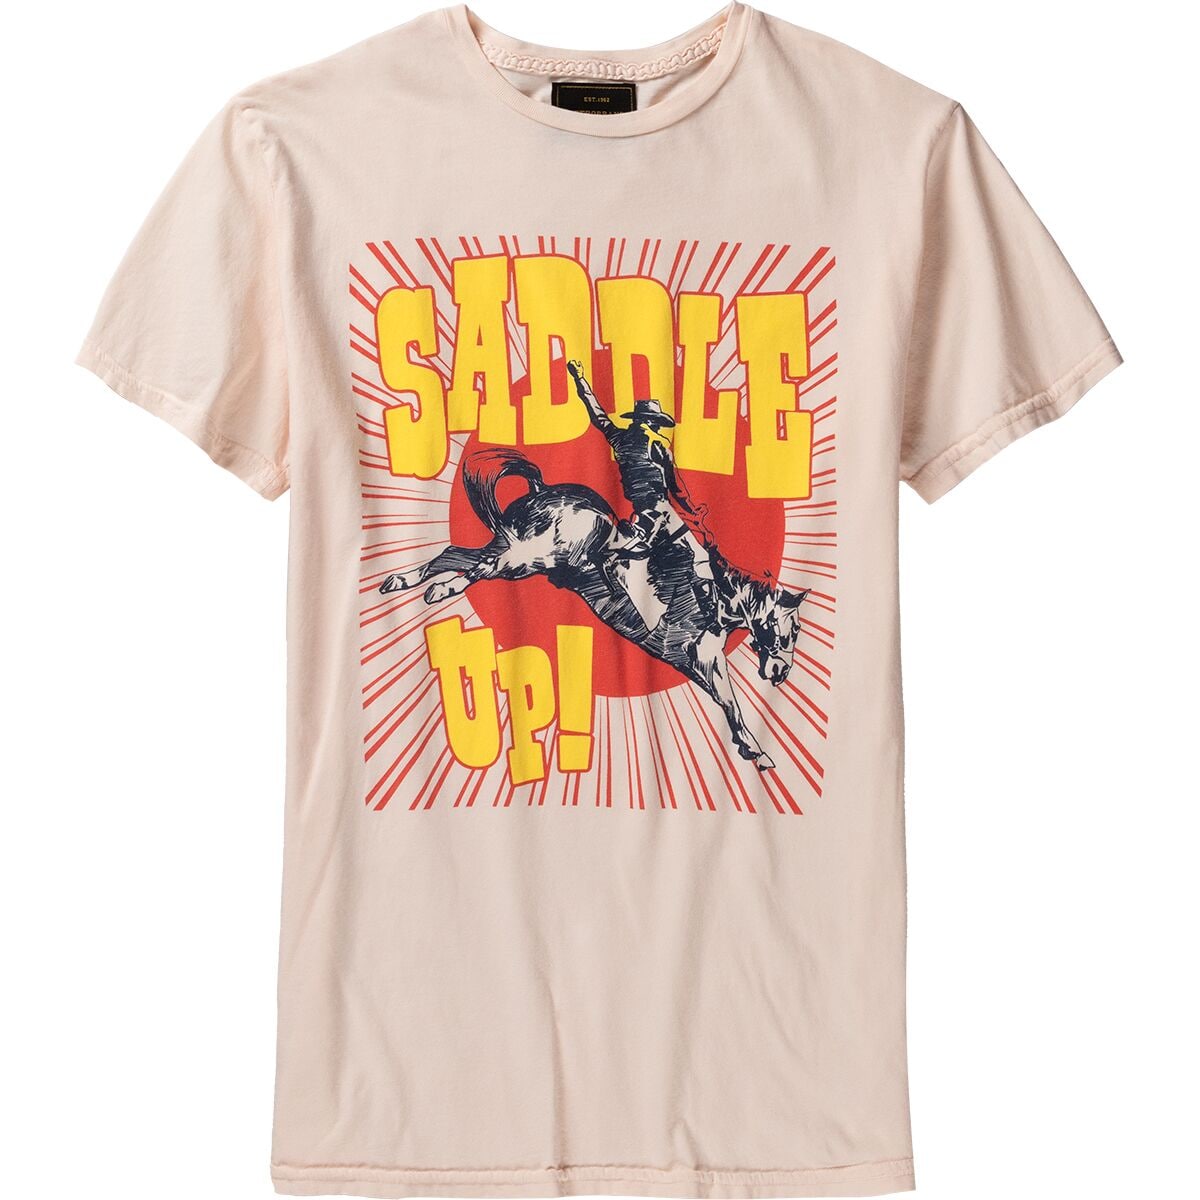 Original Retro Brand Saddle Up T-Shirt - Women's